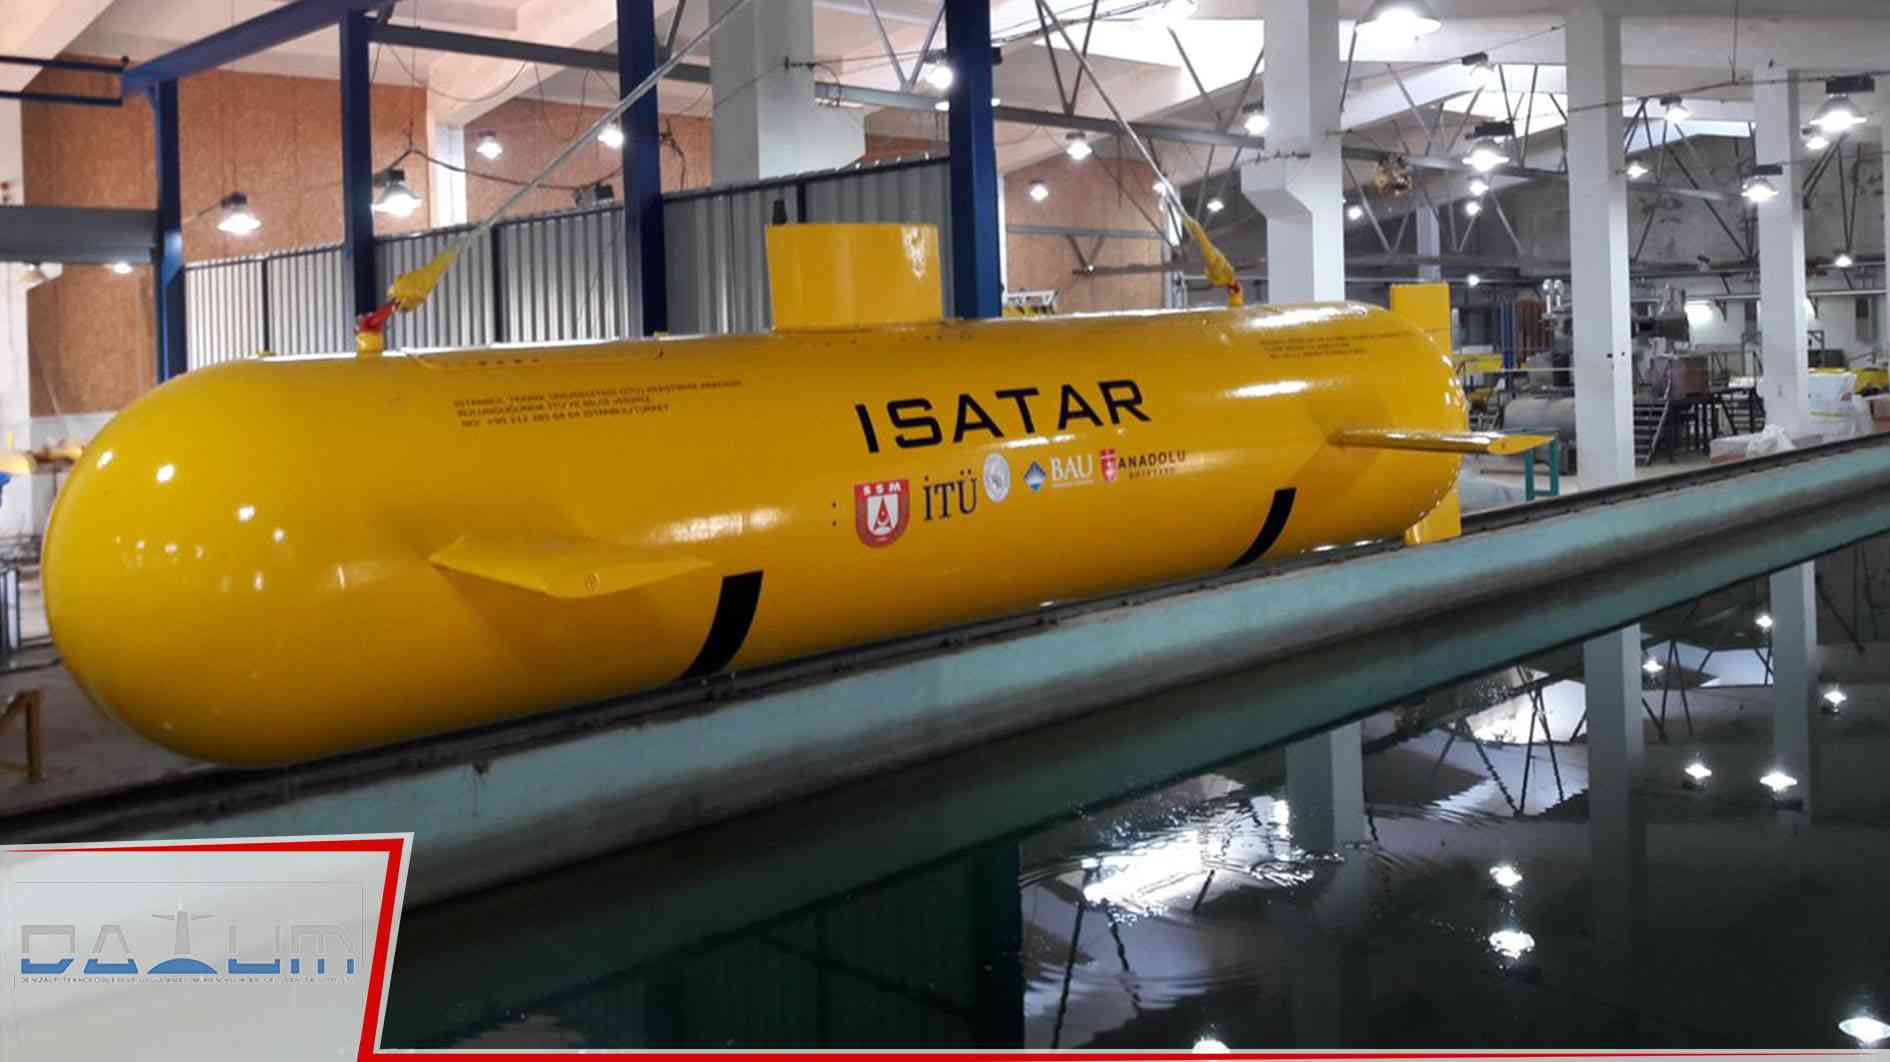 Donanmaların yeni stratejik aracı mini denizaltılar